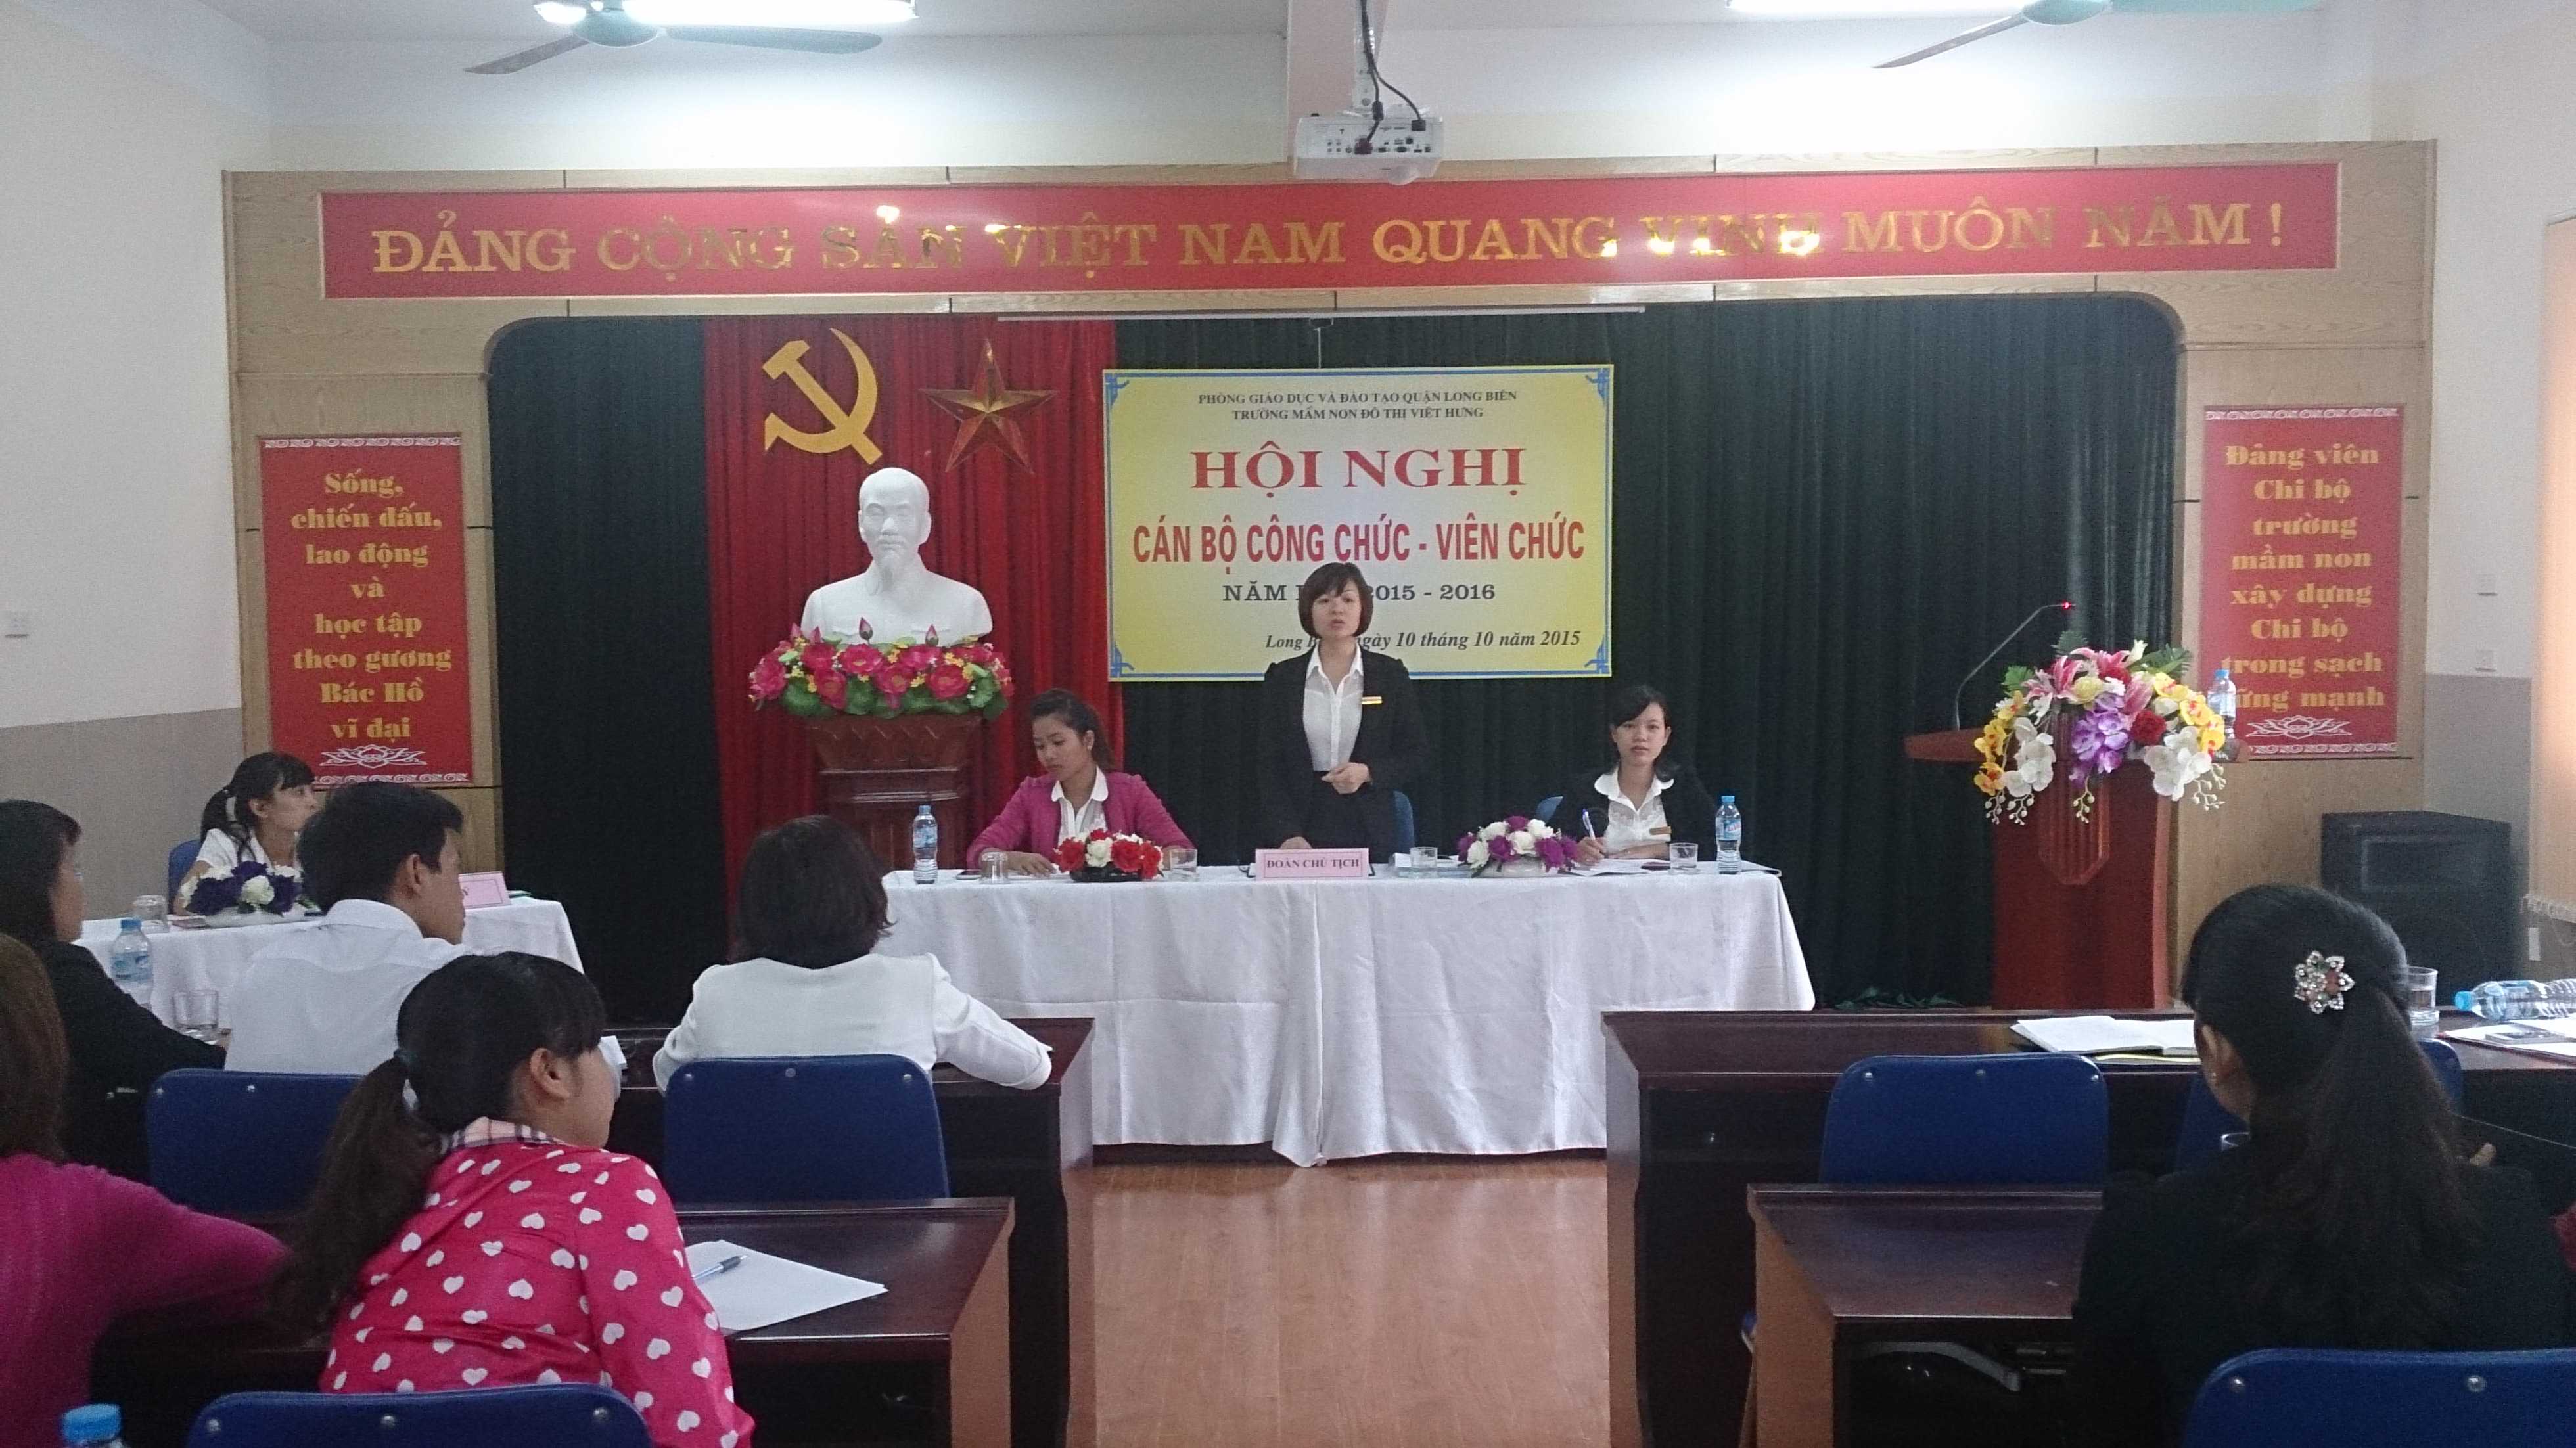 Đ/c Trần Thị Hoàng Lâm - Hiệu Trưởng nhà trường giải đáp thắc mắc của CBGVNV.